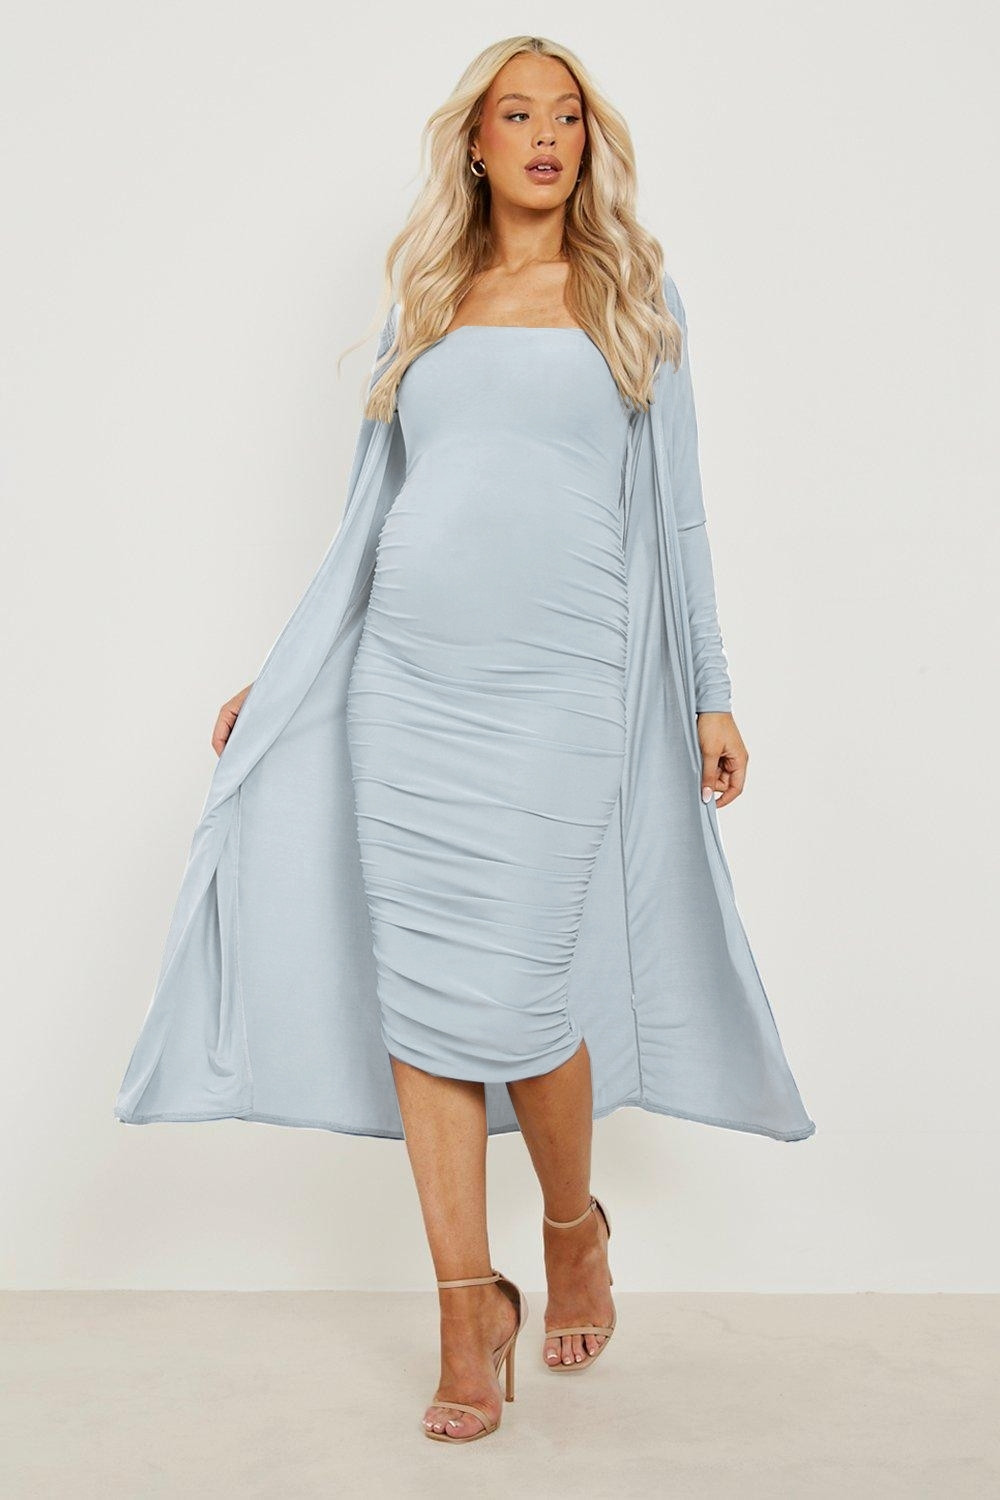 ciążowy komplet niebieska sukienka marszczenia narzutka